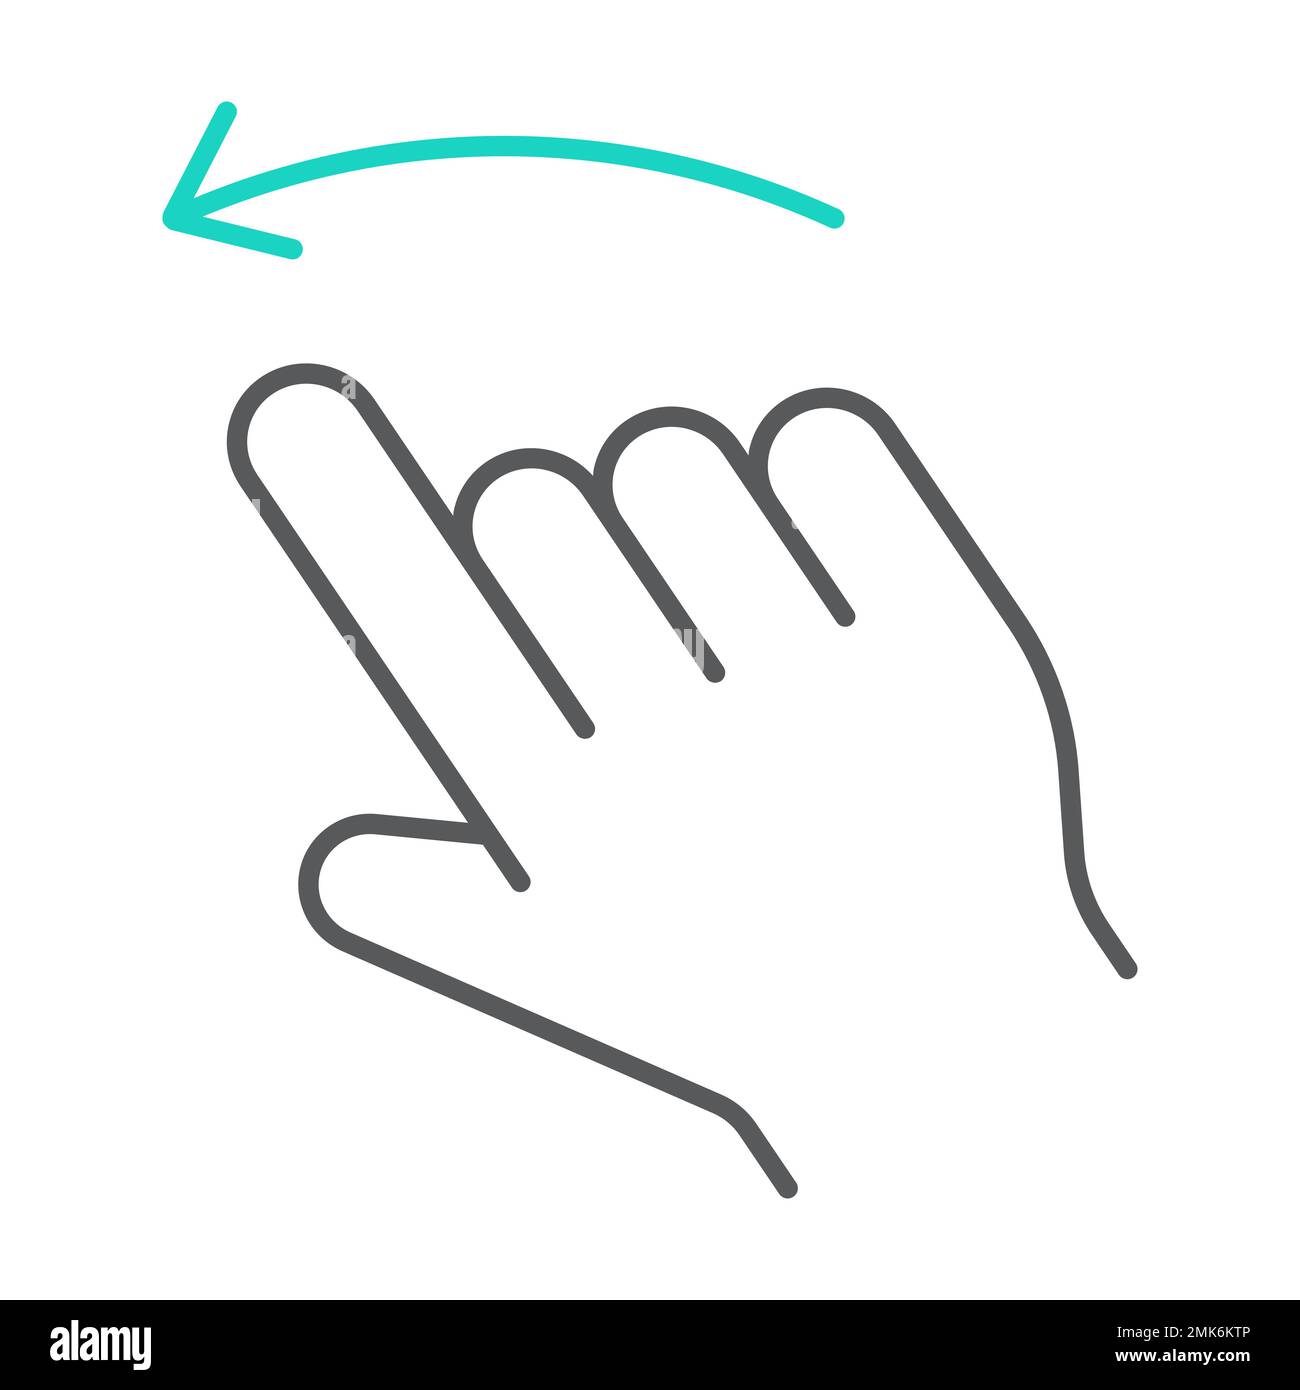 Gesten der rechten hand Stock-Vektorgrafiken kaufen - Seite 3 - Alamy